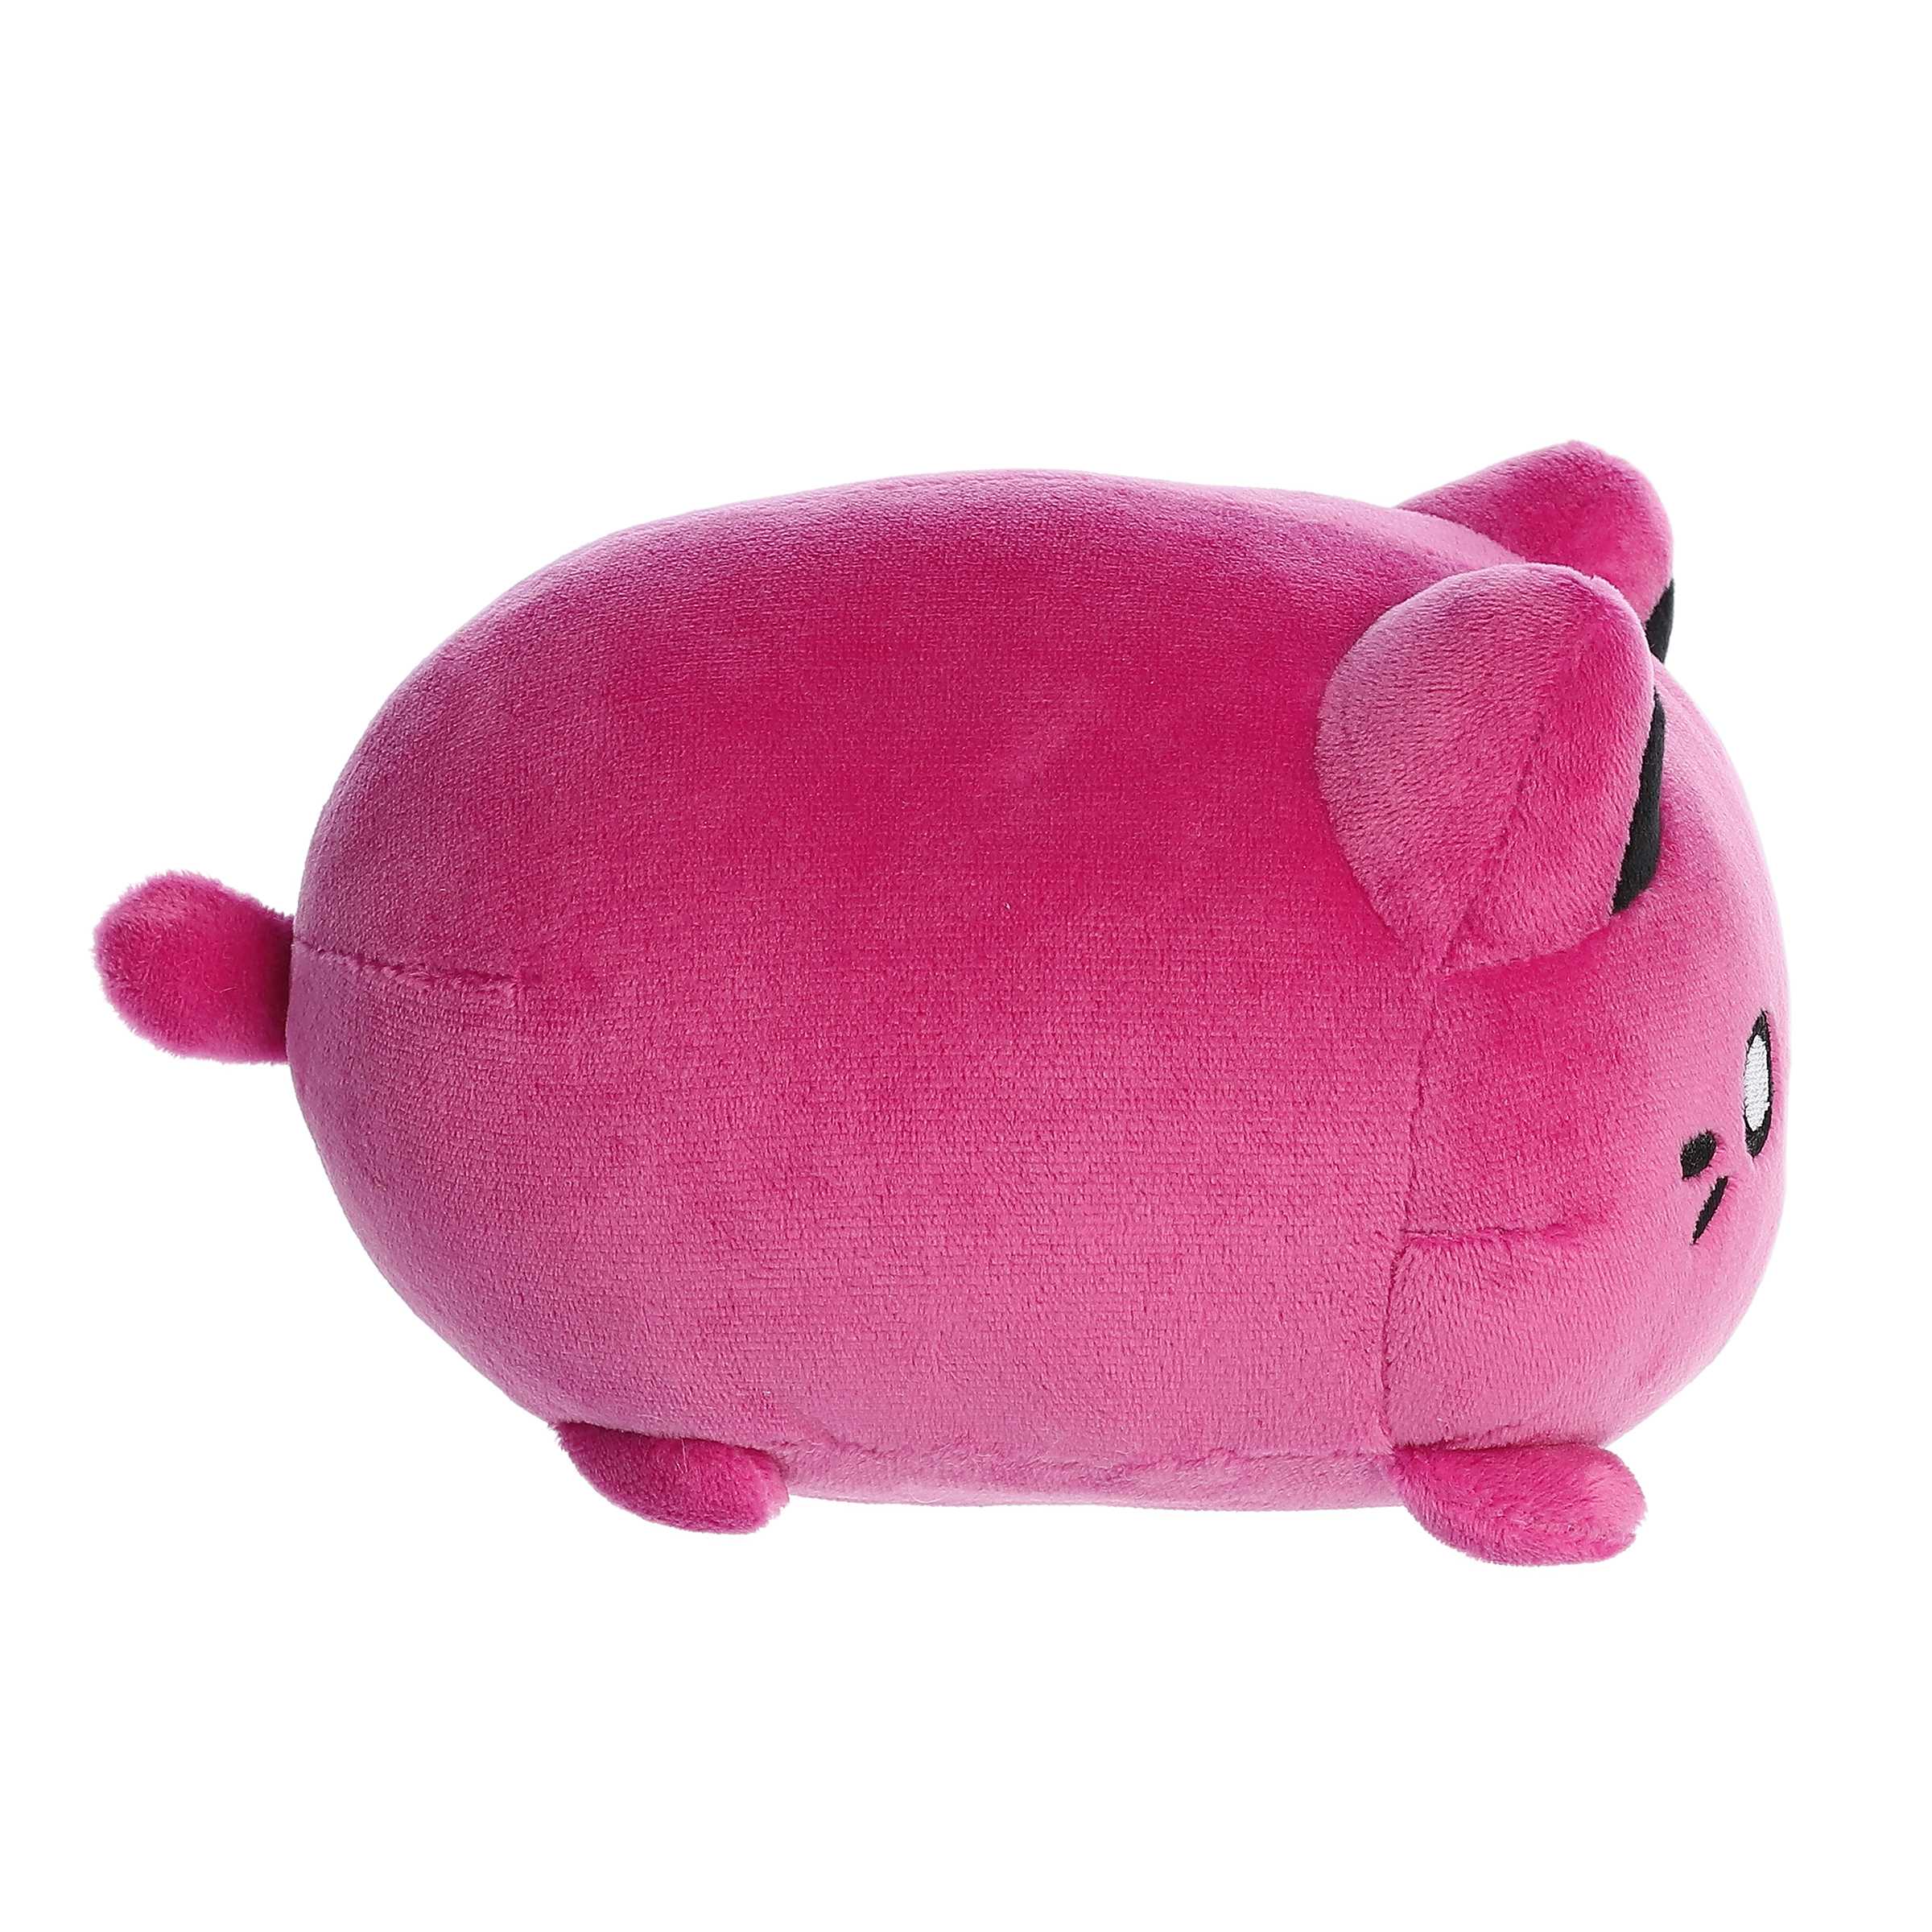 Kirby smiling plush pink or blue • Magic Plush